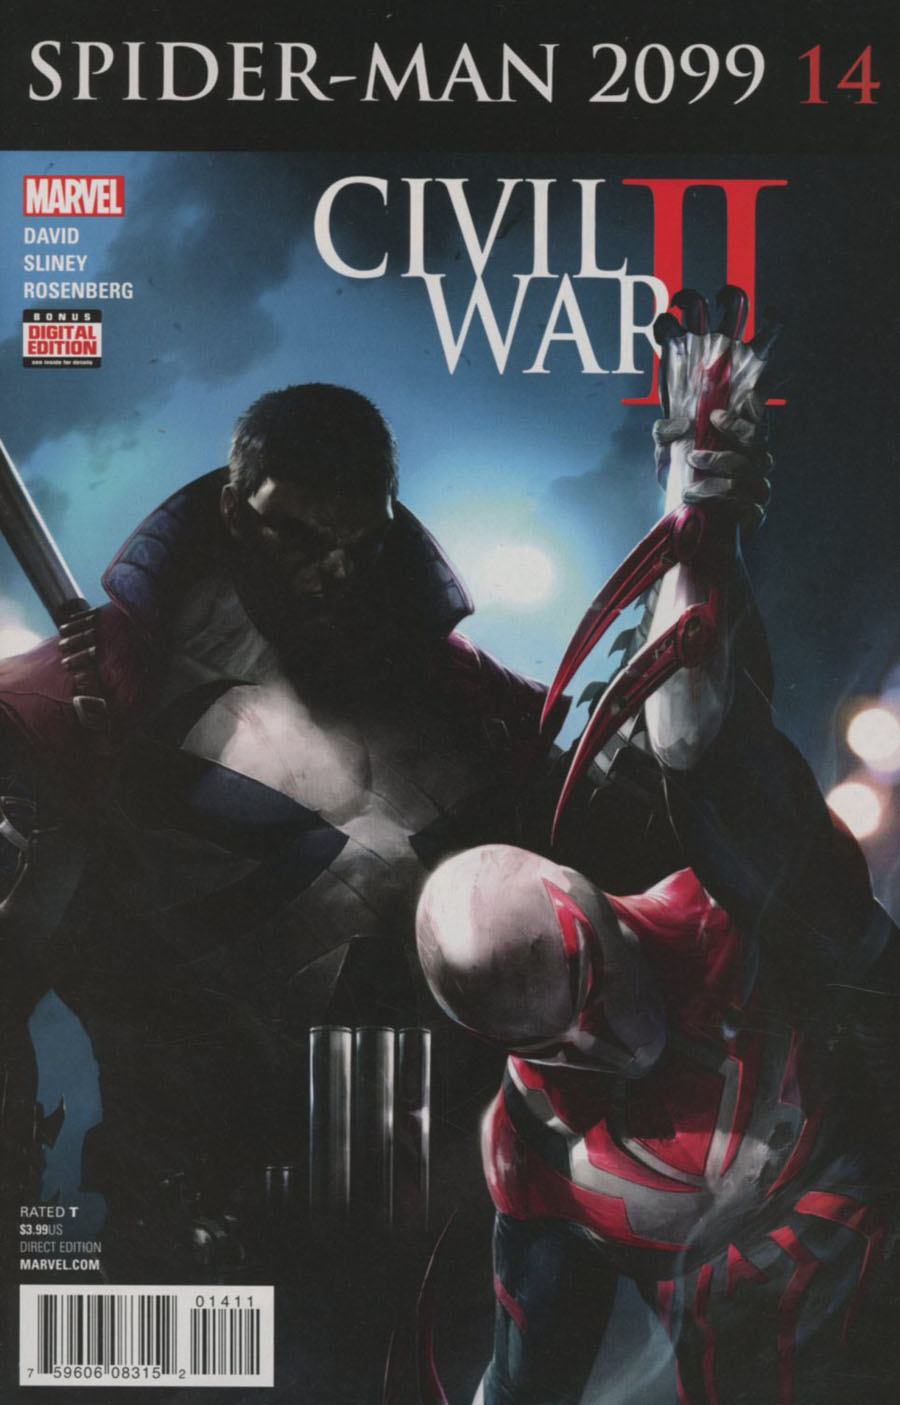 Spider-Man 2099 Vol 3 #14 (Civil War II Tie-In)